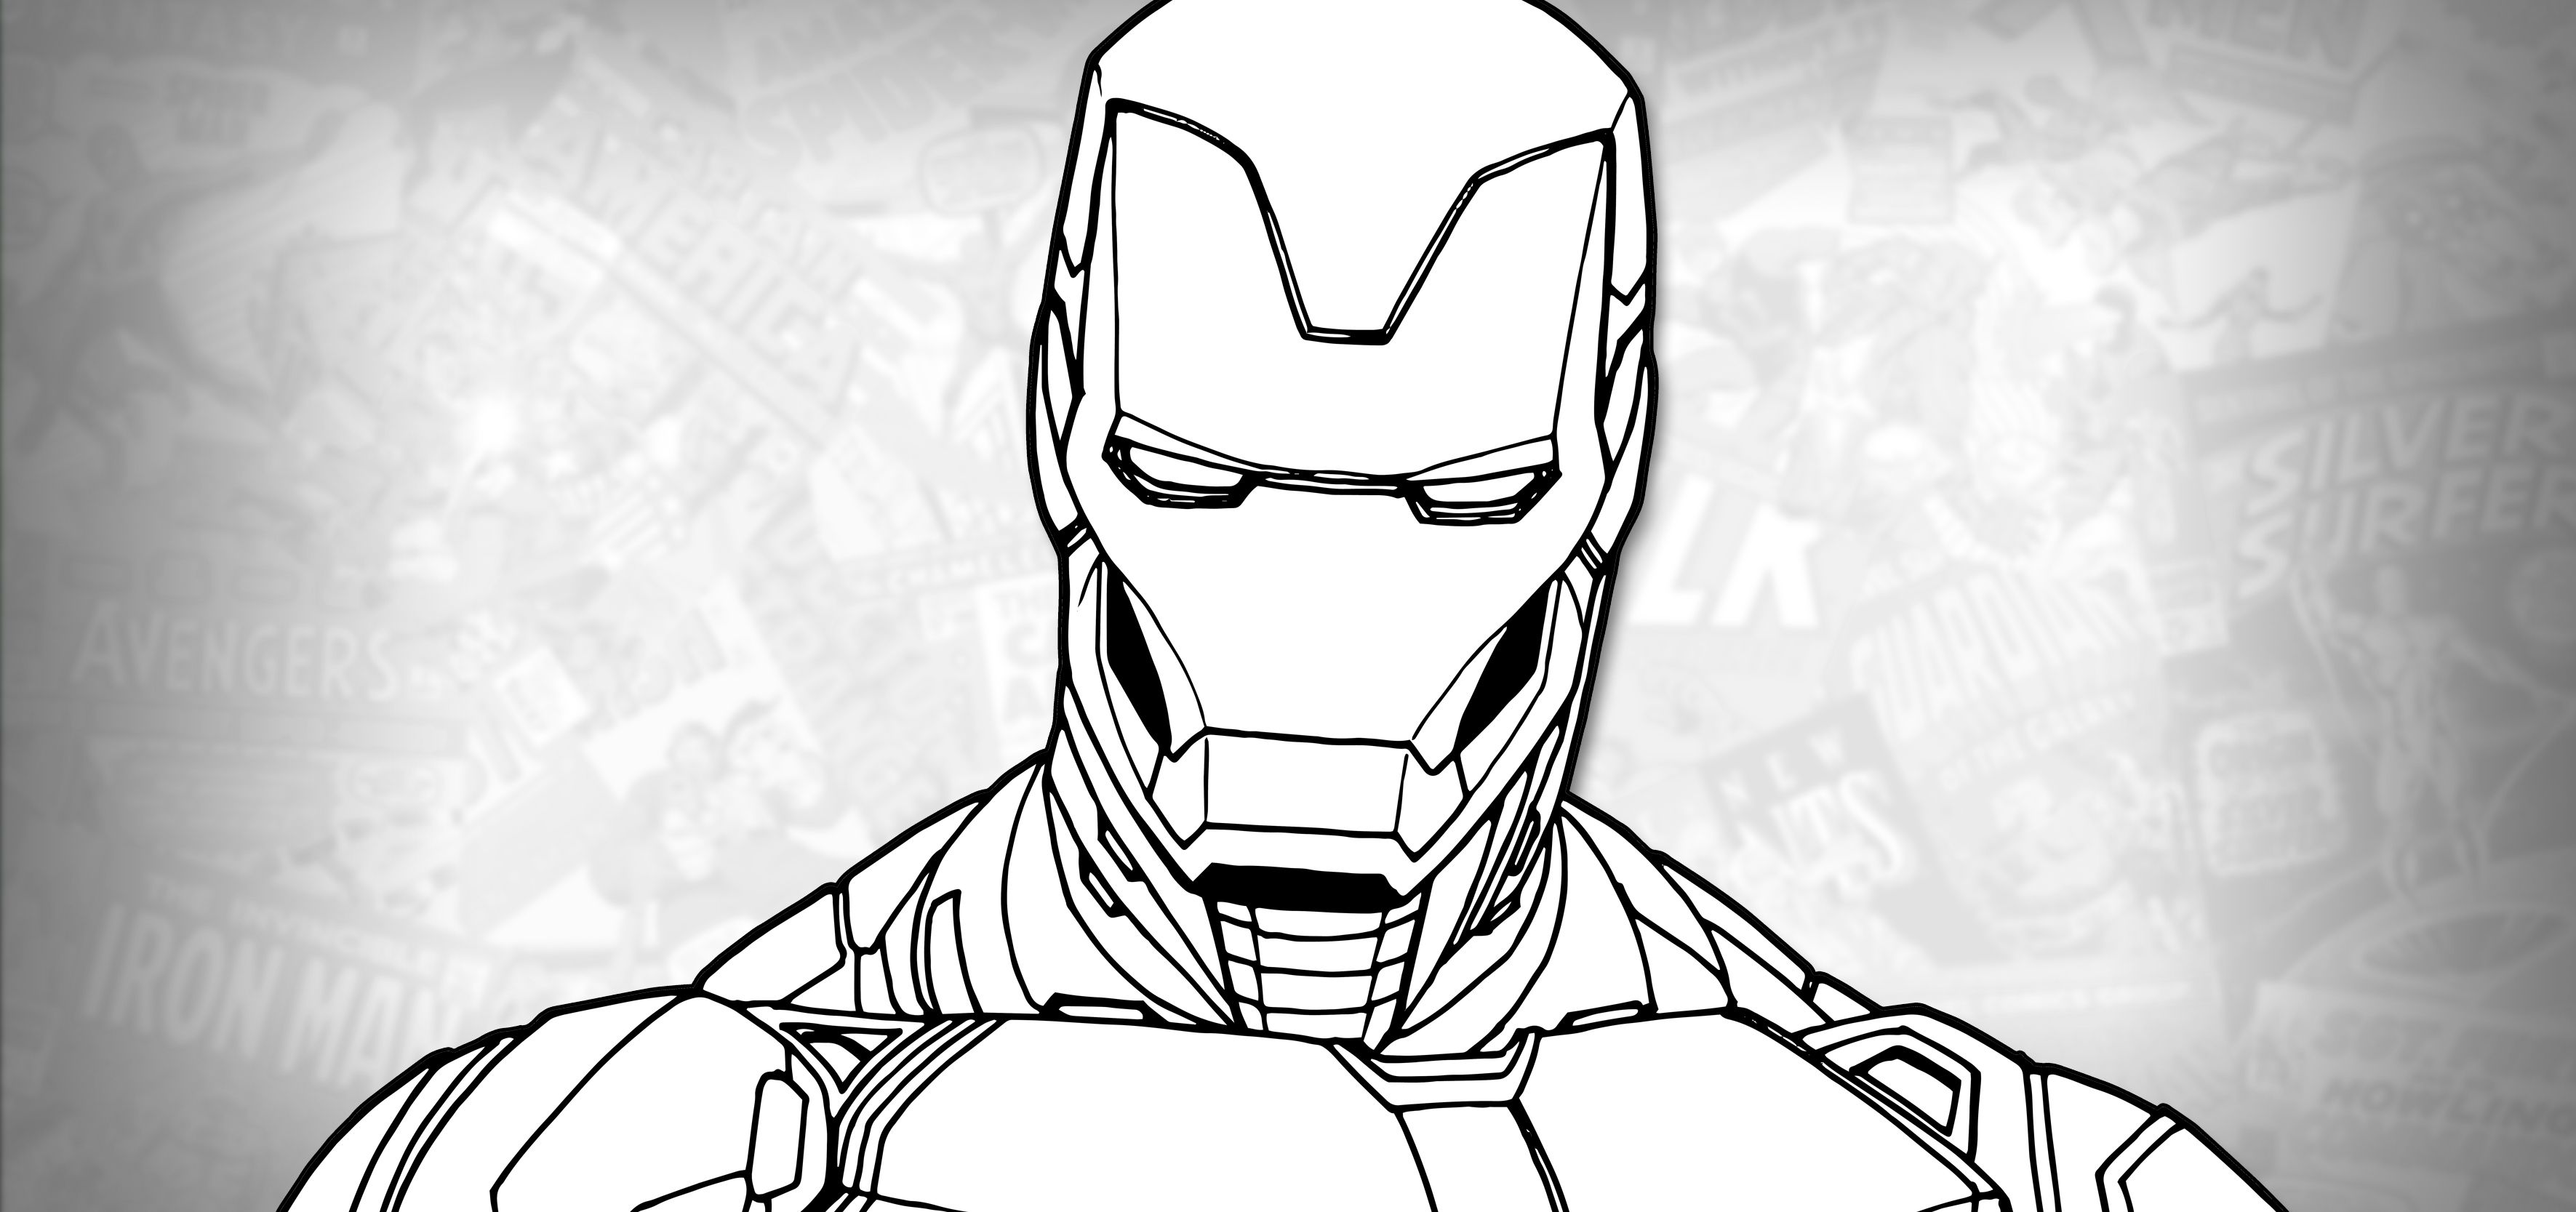 Yenthe Joline Art Blog  Iron man sketch All done with a regular